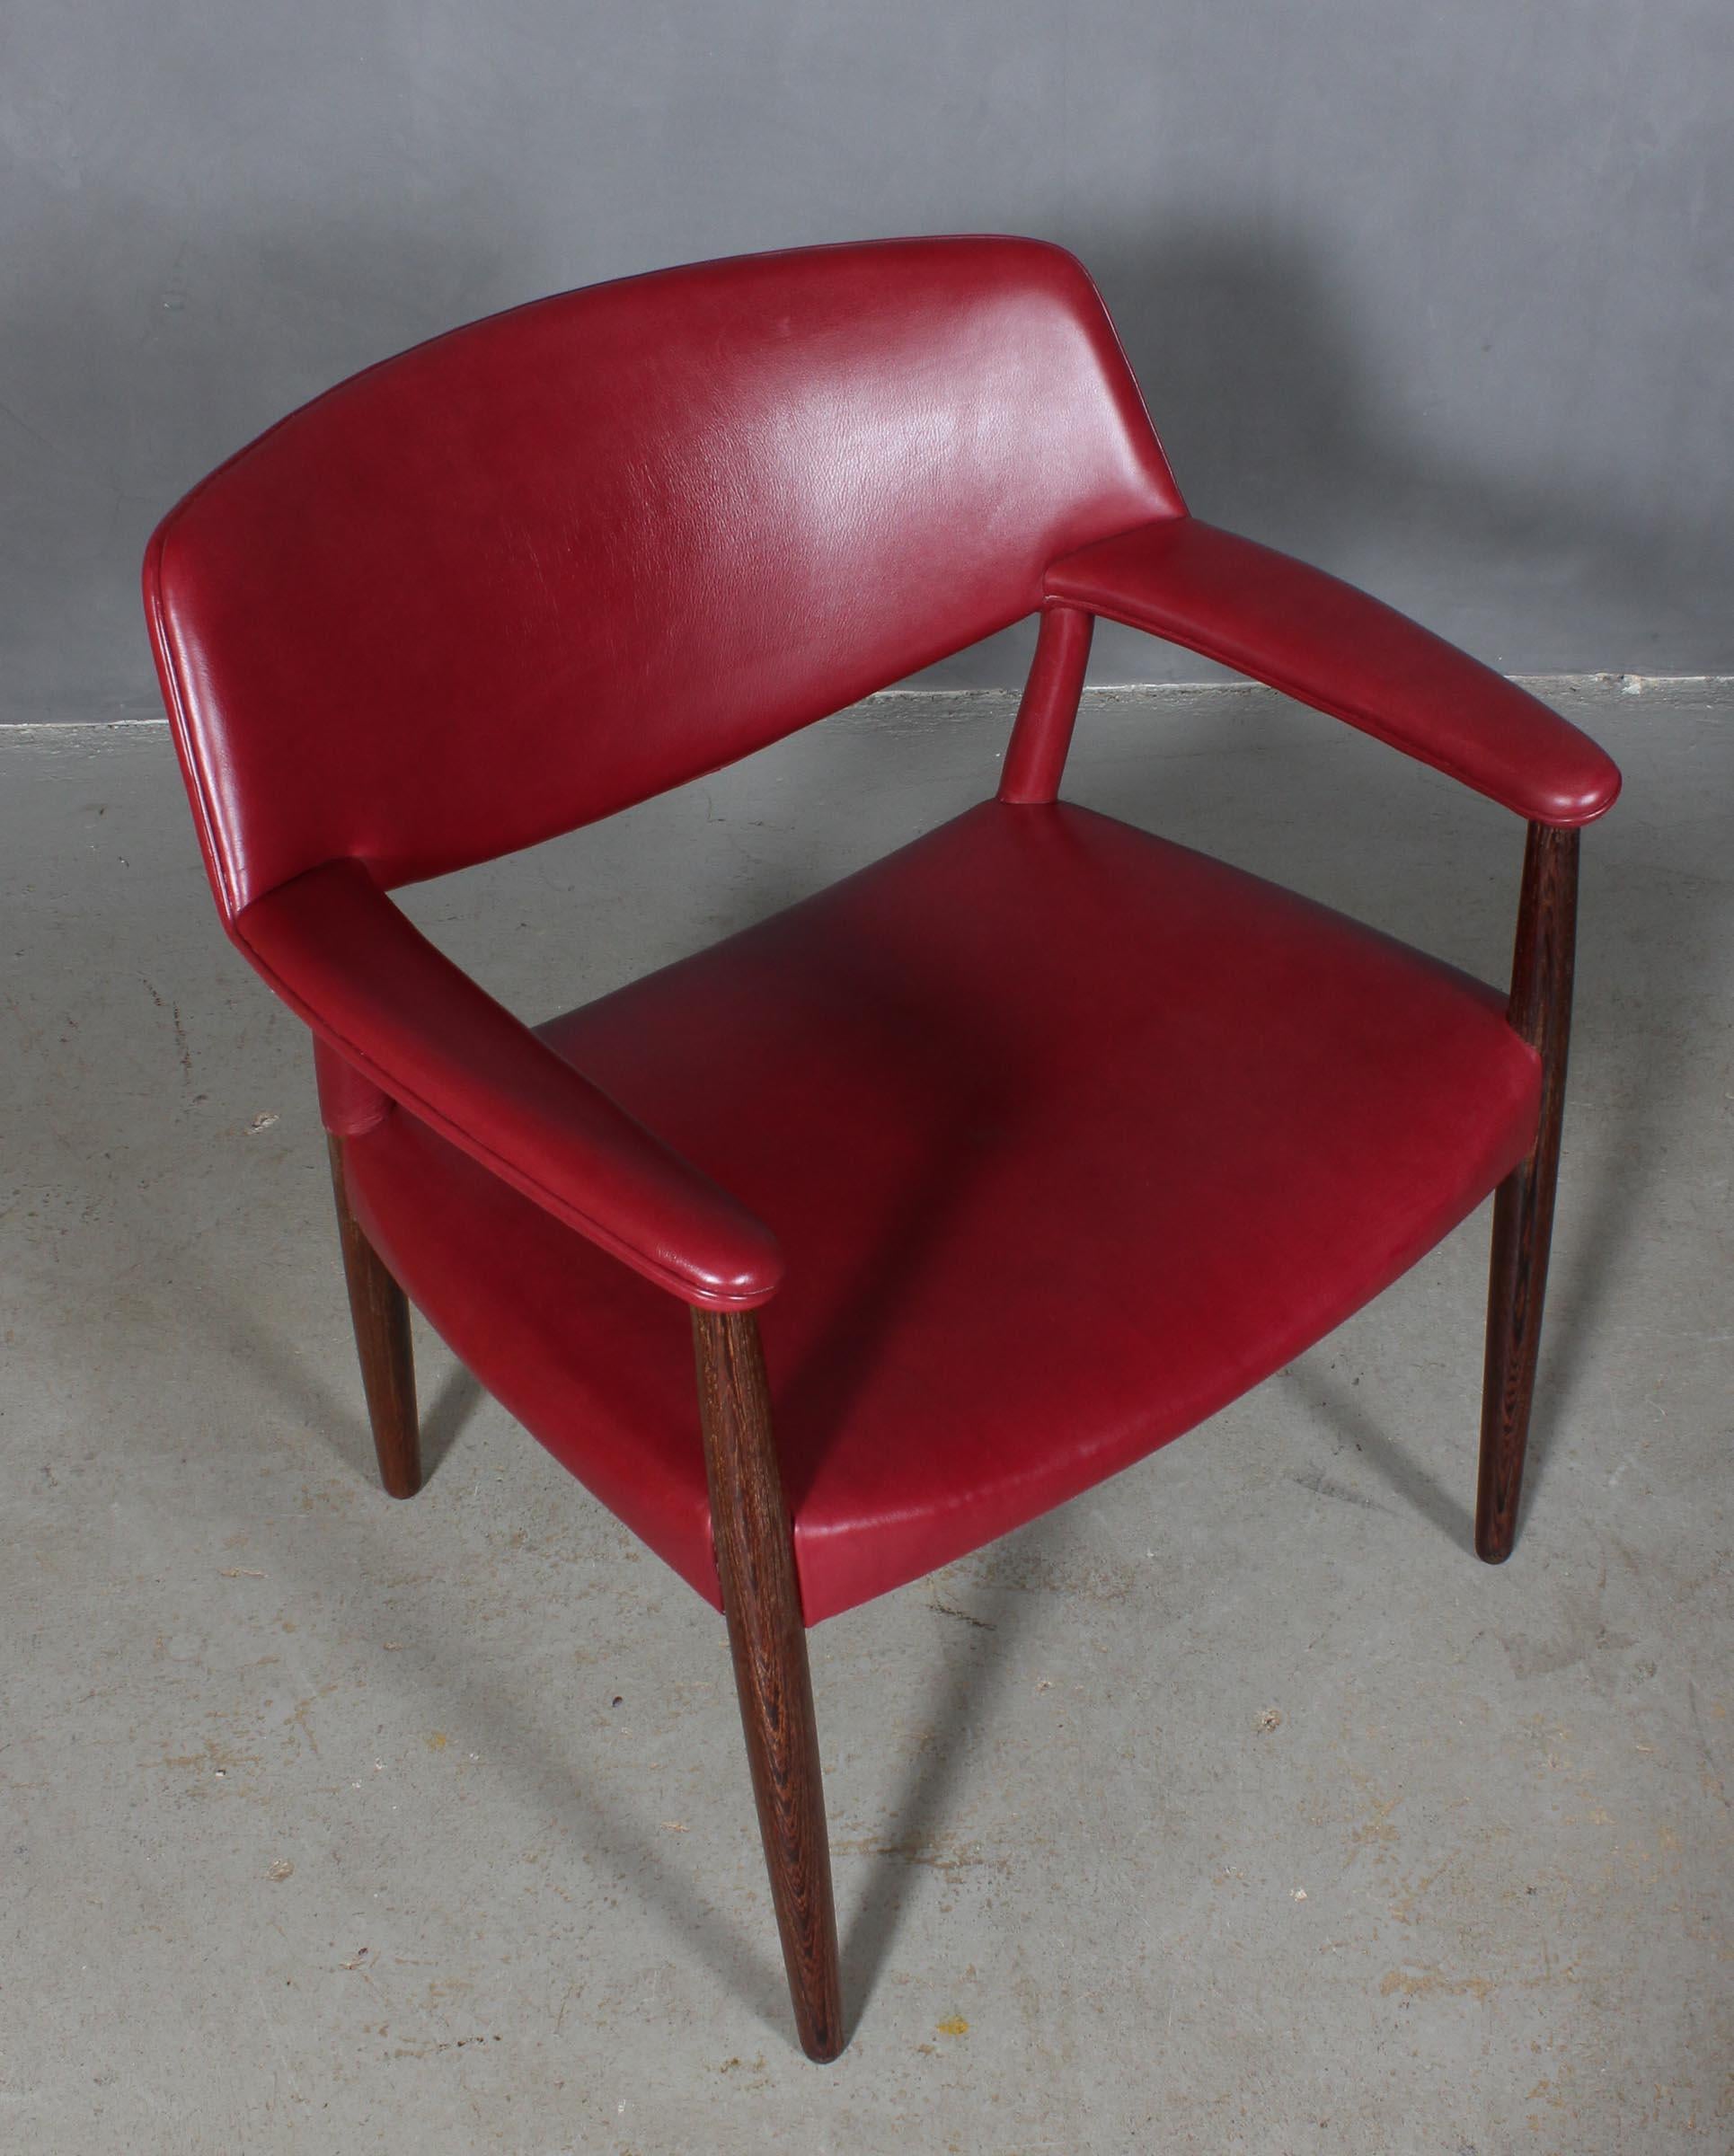 Einer Larsen & Aksel Bender Madsen Sessel, gepolstert mit indisch rotem Anilinleder.

Rahmen aus Wenge.

Hergestellt von Tischler Willy Beck.